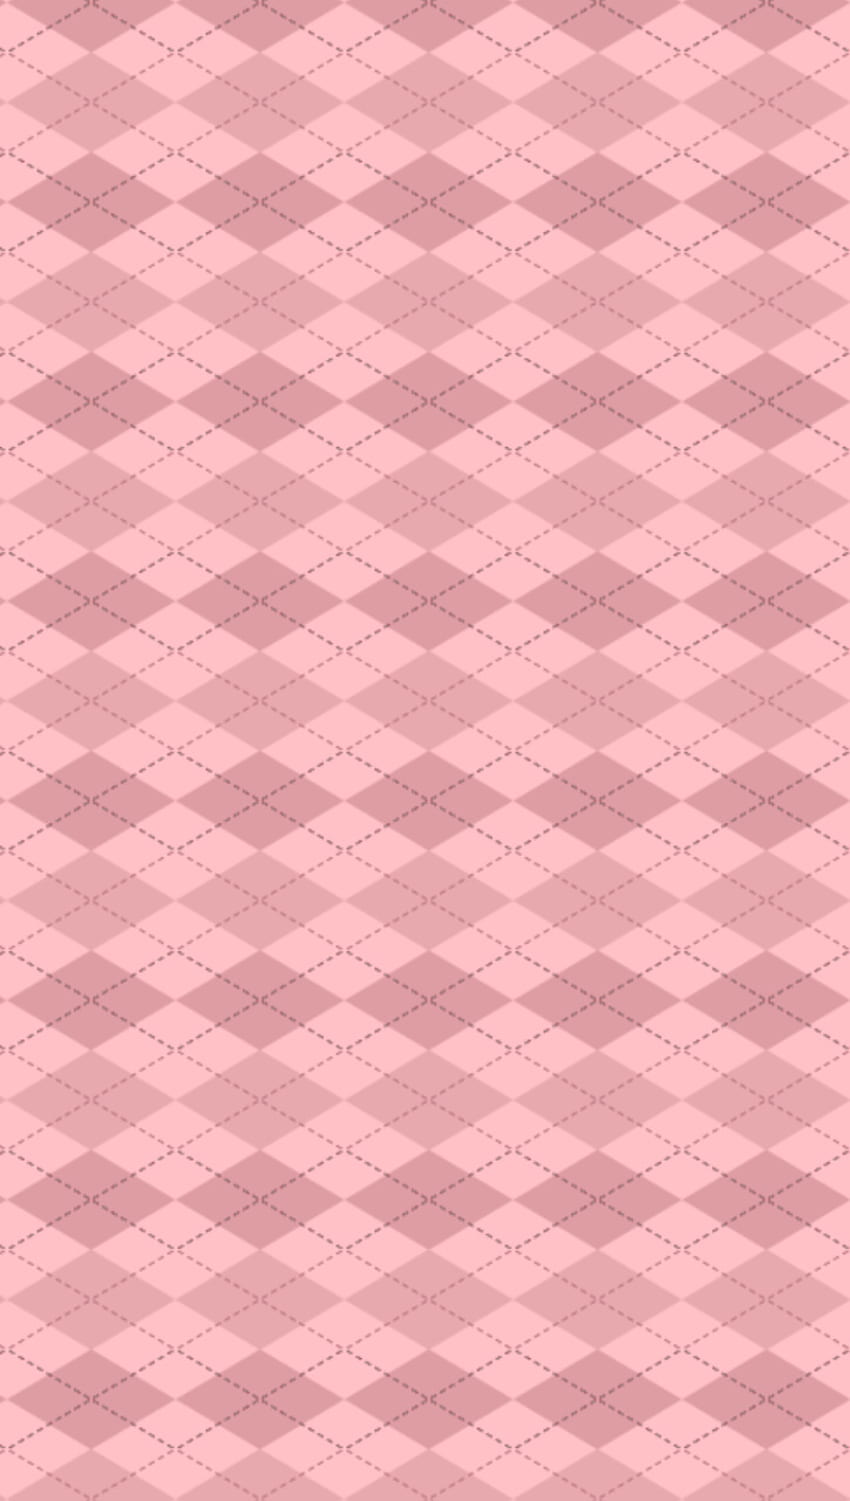 Lotus Argyle Light, argyle pattern, pink tones, light rose gold HD phone wallpaper